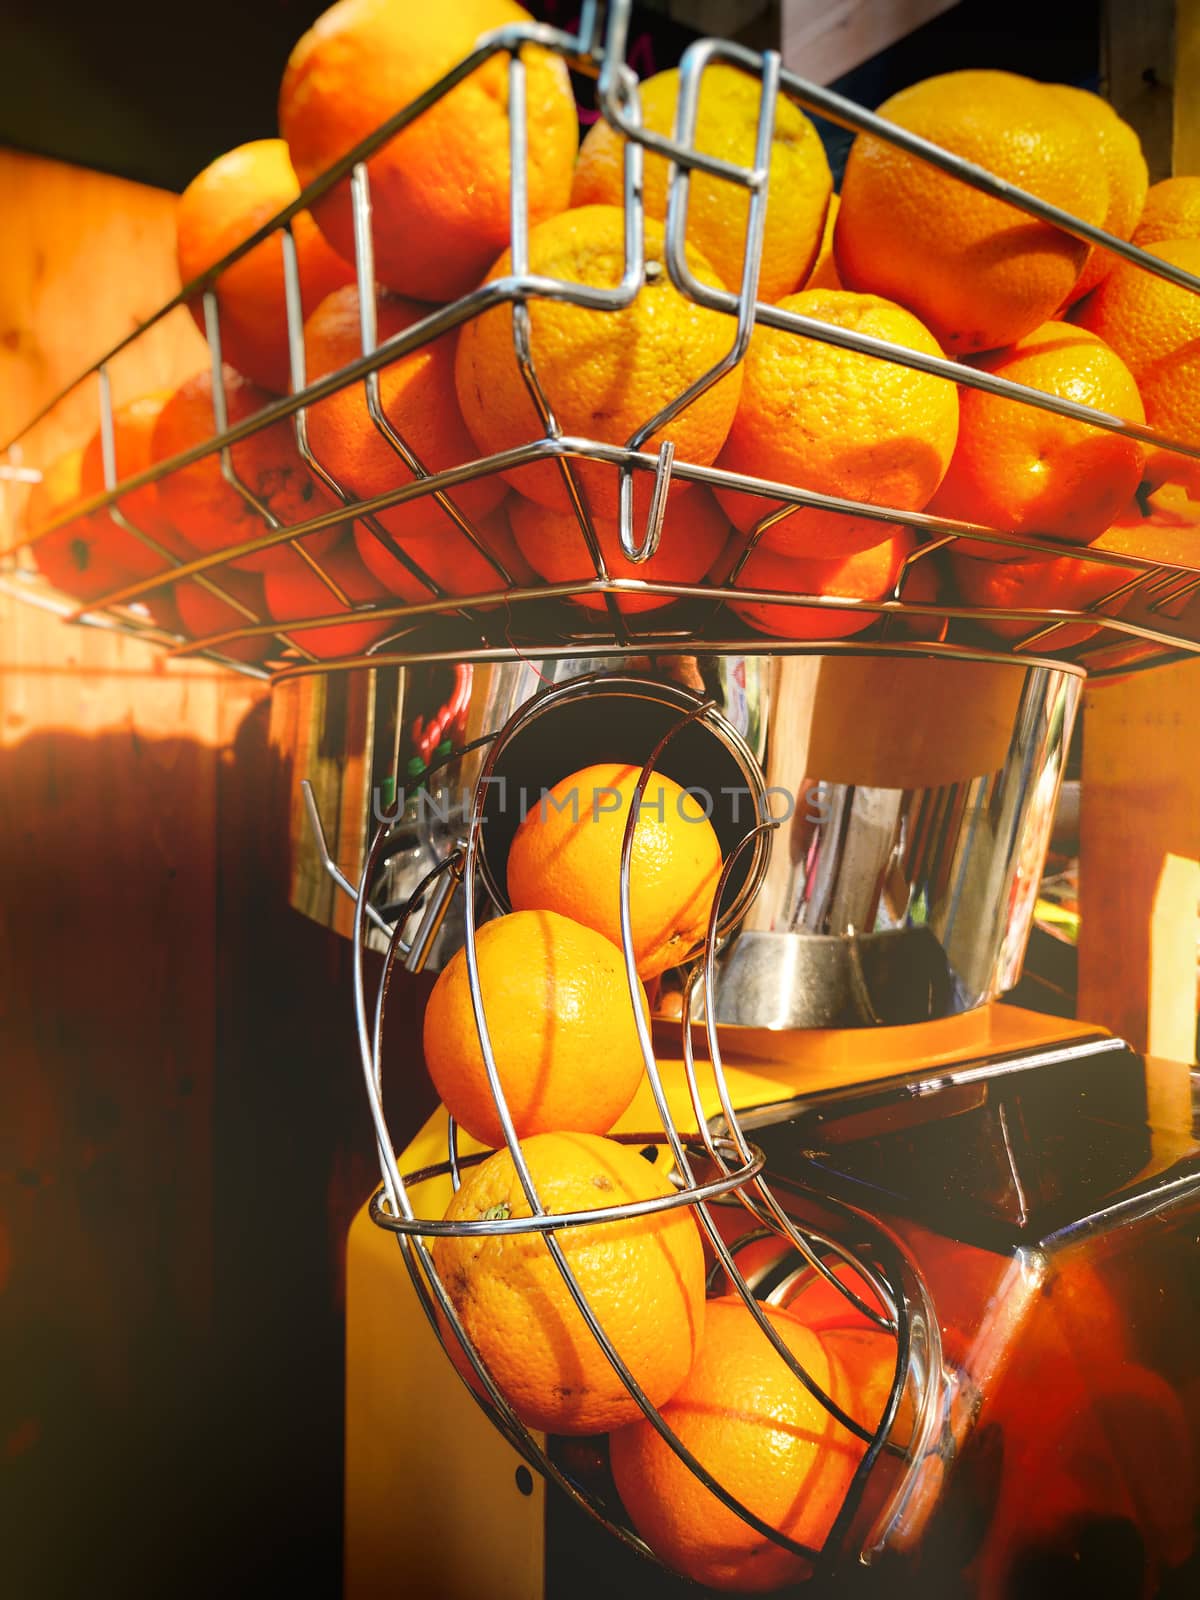 an orange juice machine squeezer in industry .